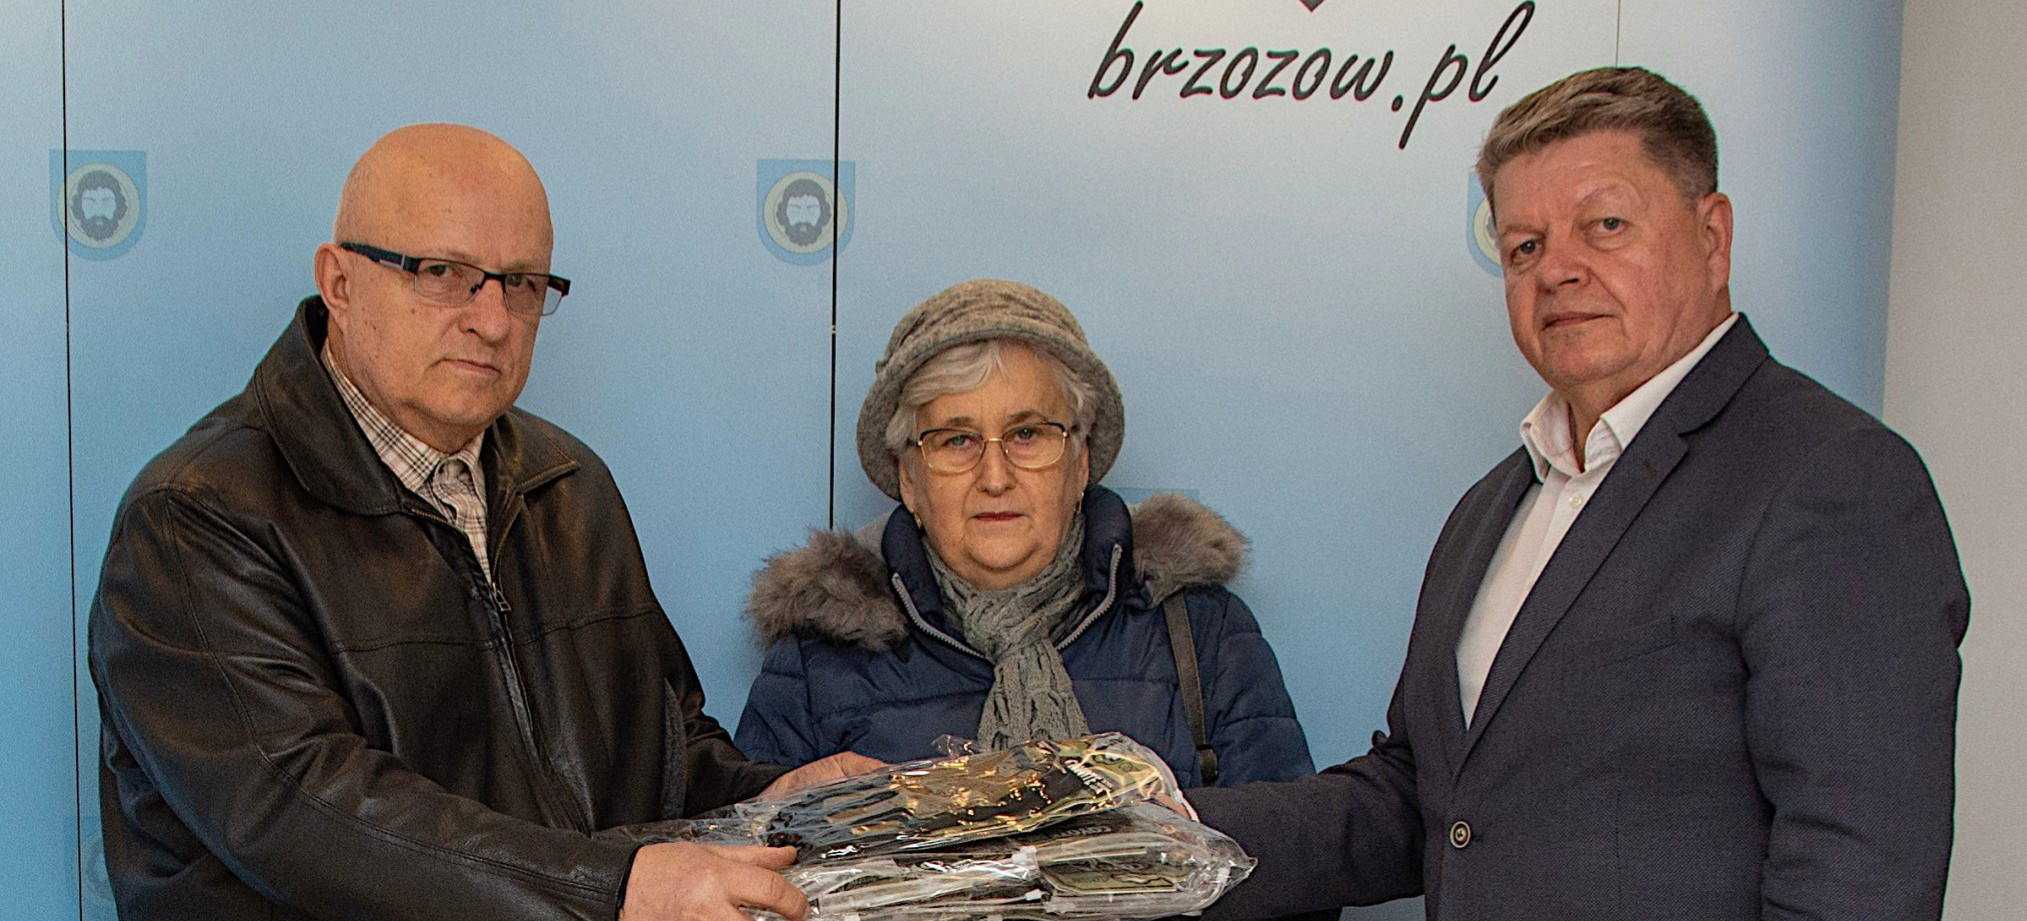 Gmina Brzozów udziela wsparcia ukraińskim żołnierzom (FOTO)